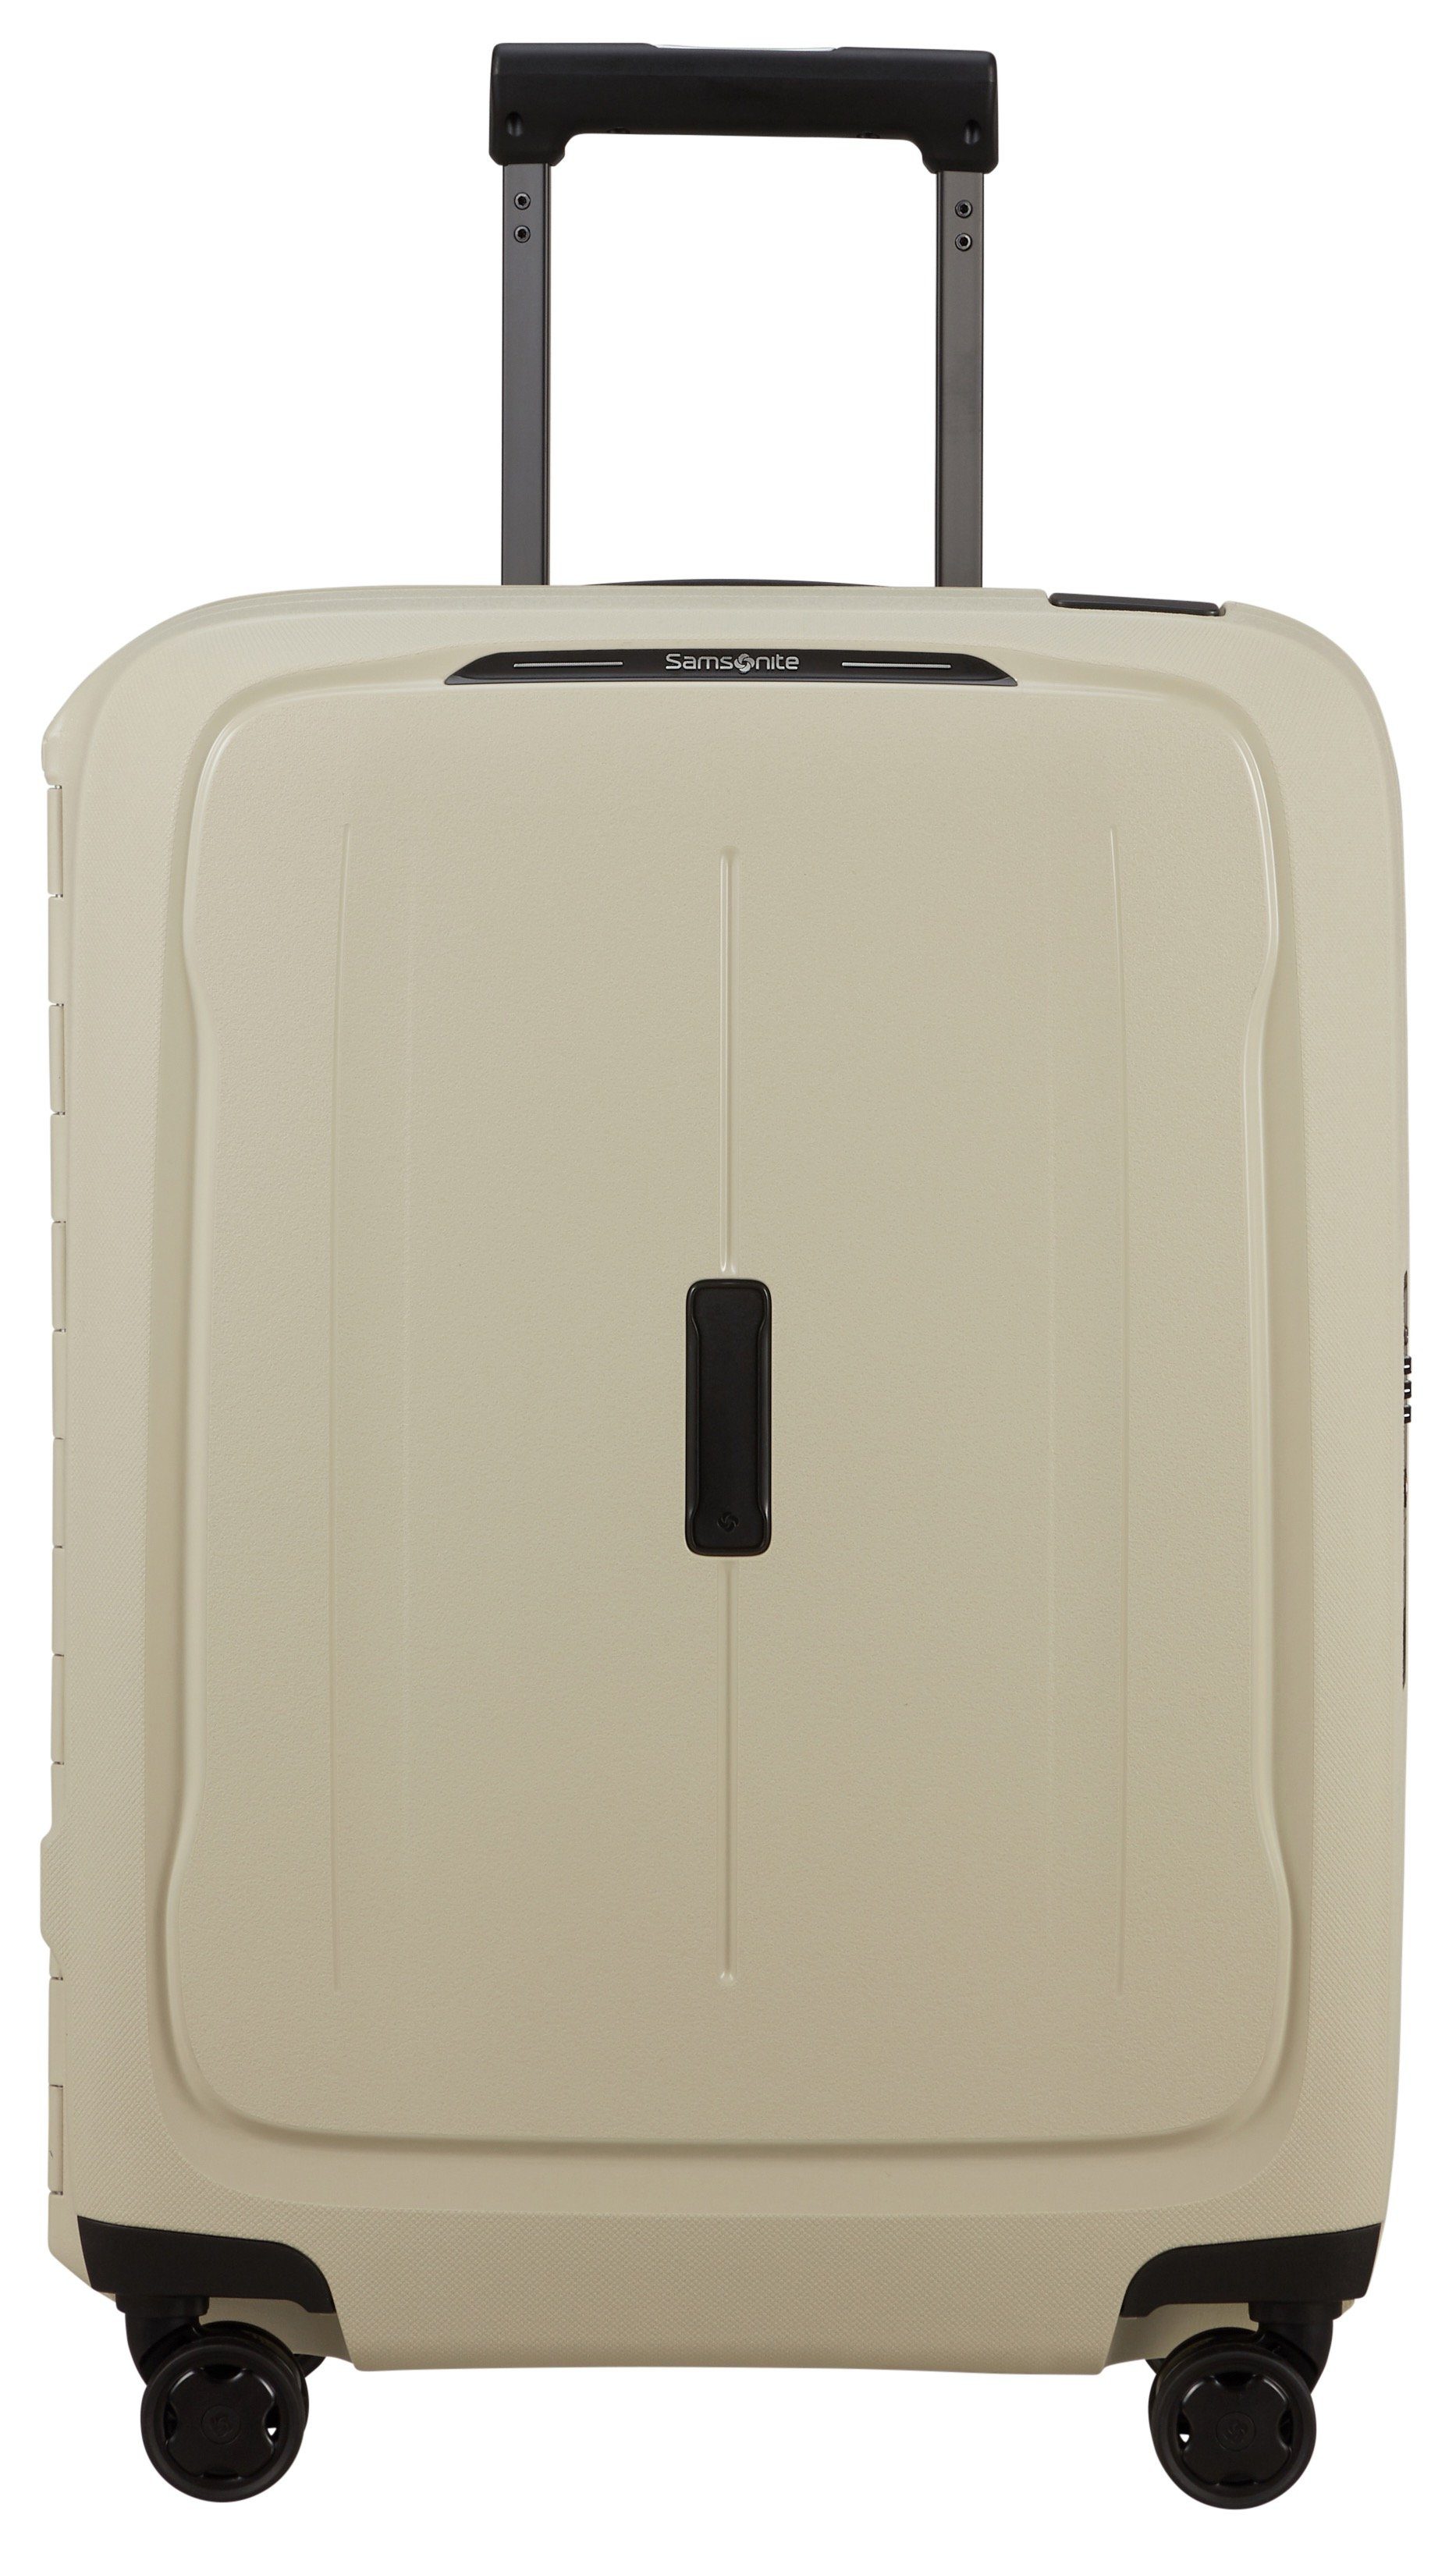 Beige Samsonite Koffer online kaufen | OTTO